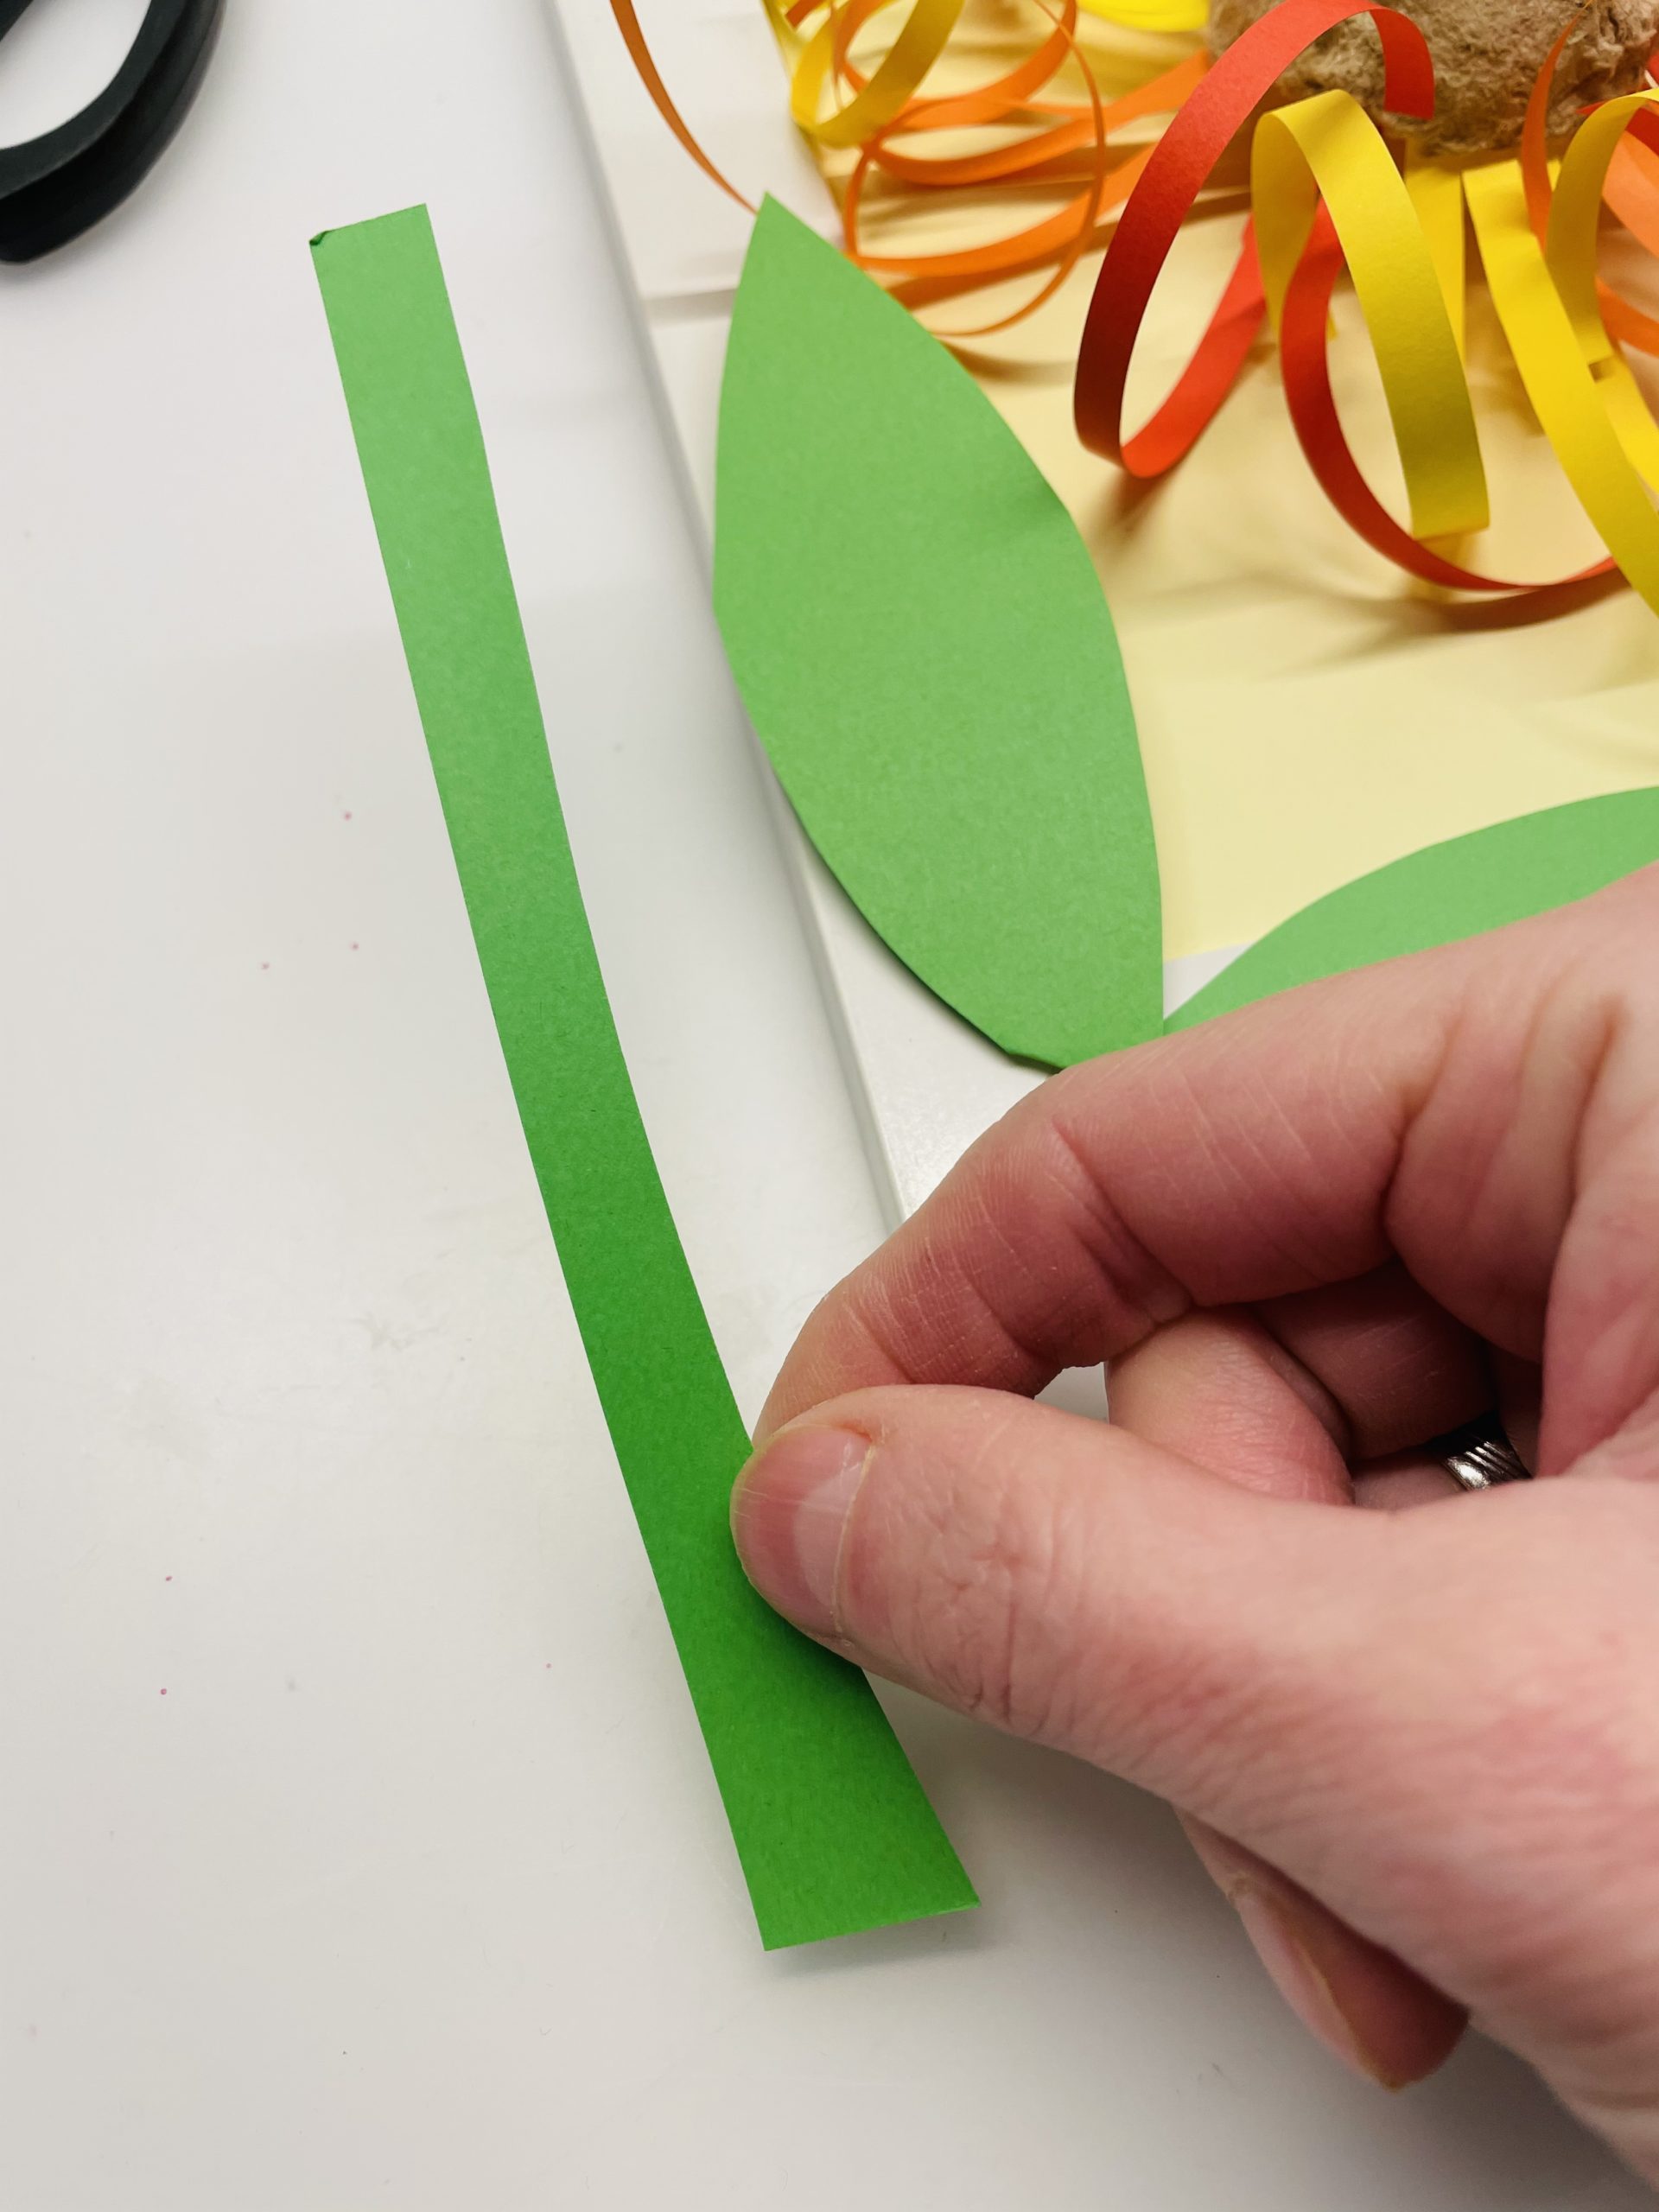 Bild zum Schritt 30 für das Bastel- und DIY-Abenteuer für Kinder: 'Schneidet einen schmalen Streifen vom grünen Papier ab.'